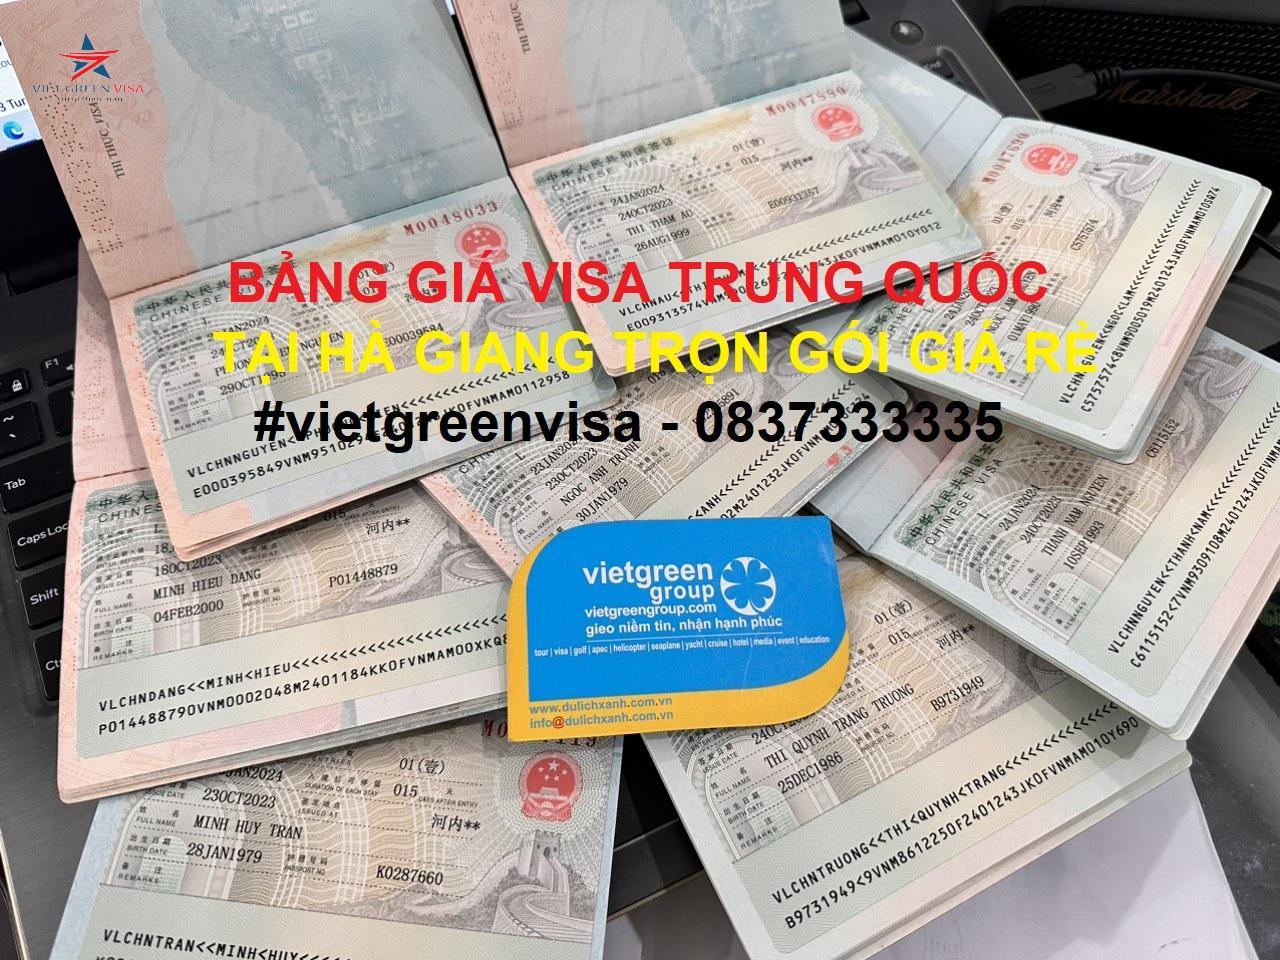 Dịch vụ xin visa Trung Quốc tại TP. Hồ Chí Minh chuyên nghiệp nhất